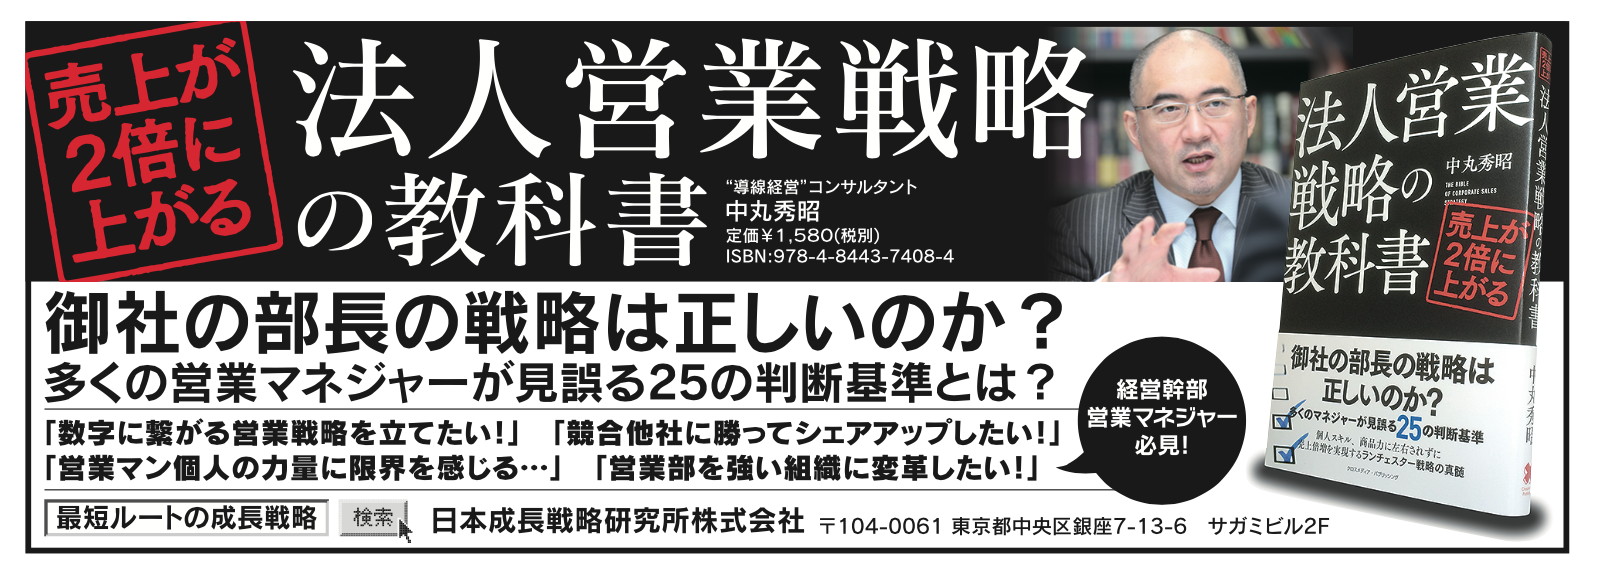 西日本新聞書籍広告